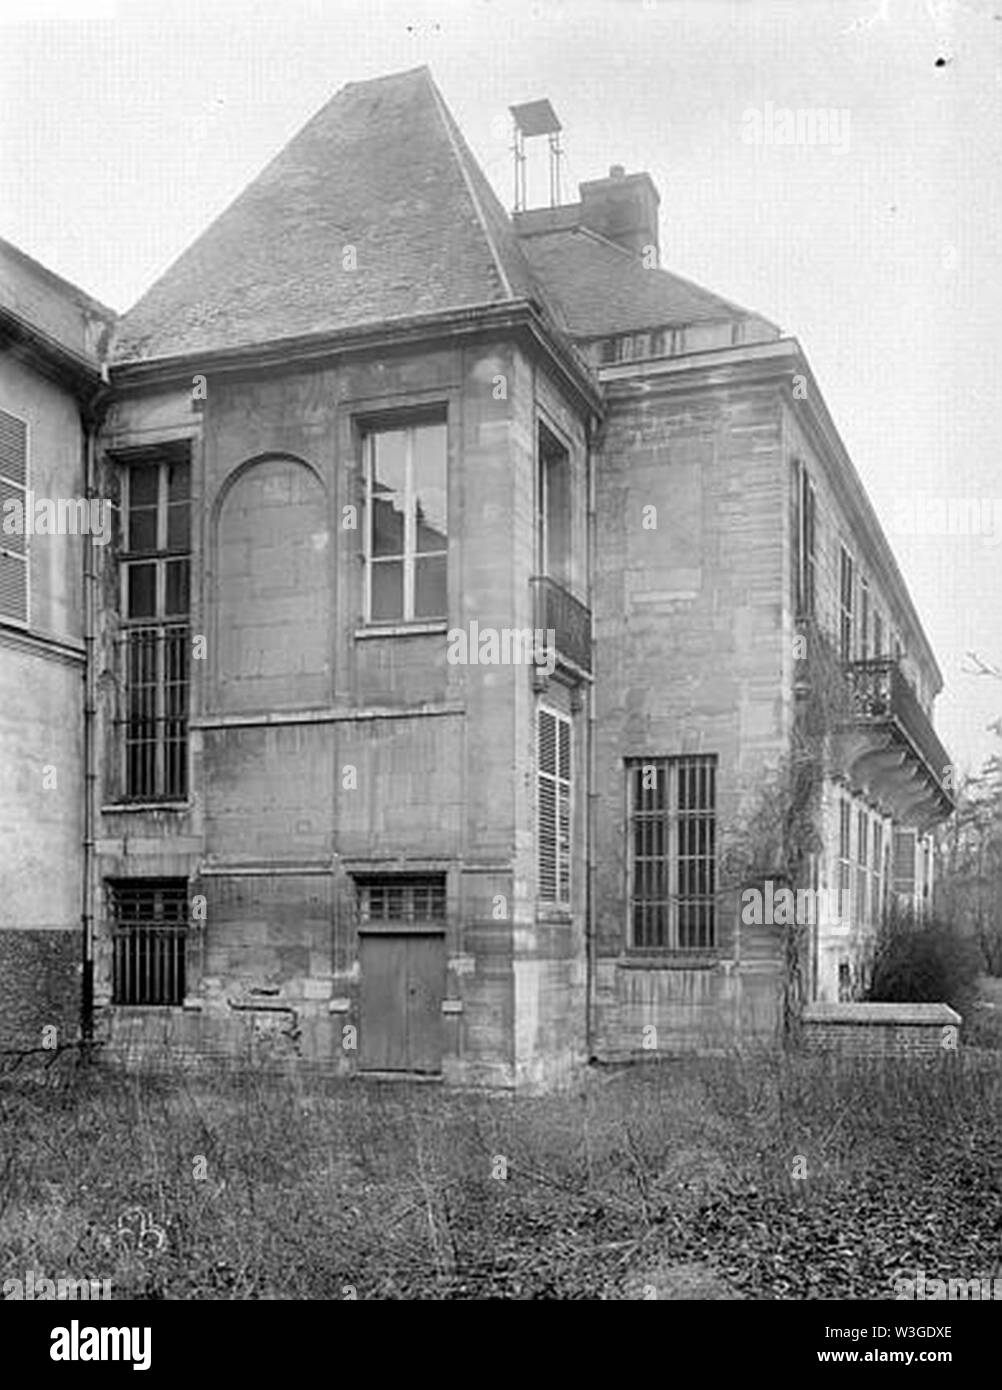 Château de Conflans (ancien) - Pavillon de gauche au sud - Charenton-le-Pont - Médiathèque de l'architecture et du patrimoine - APMH00015028. Foto Stock